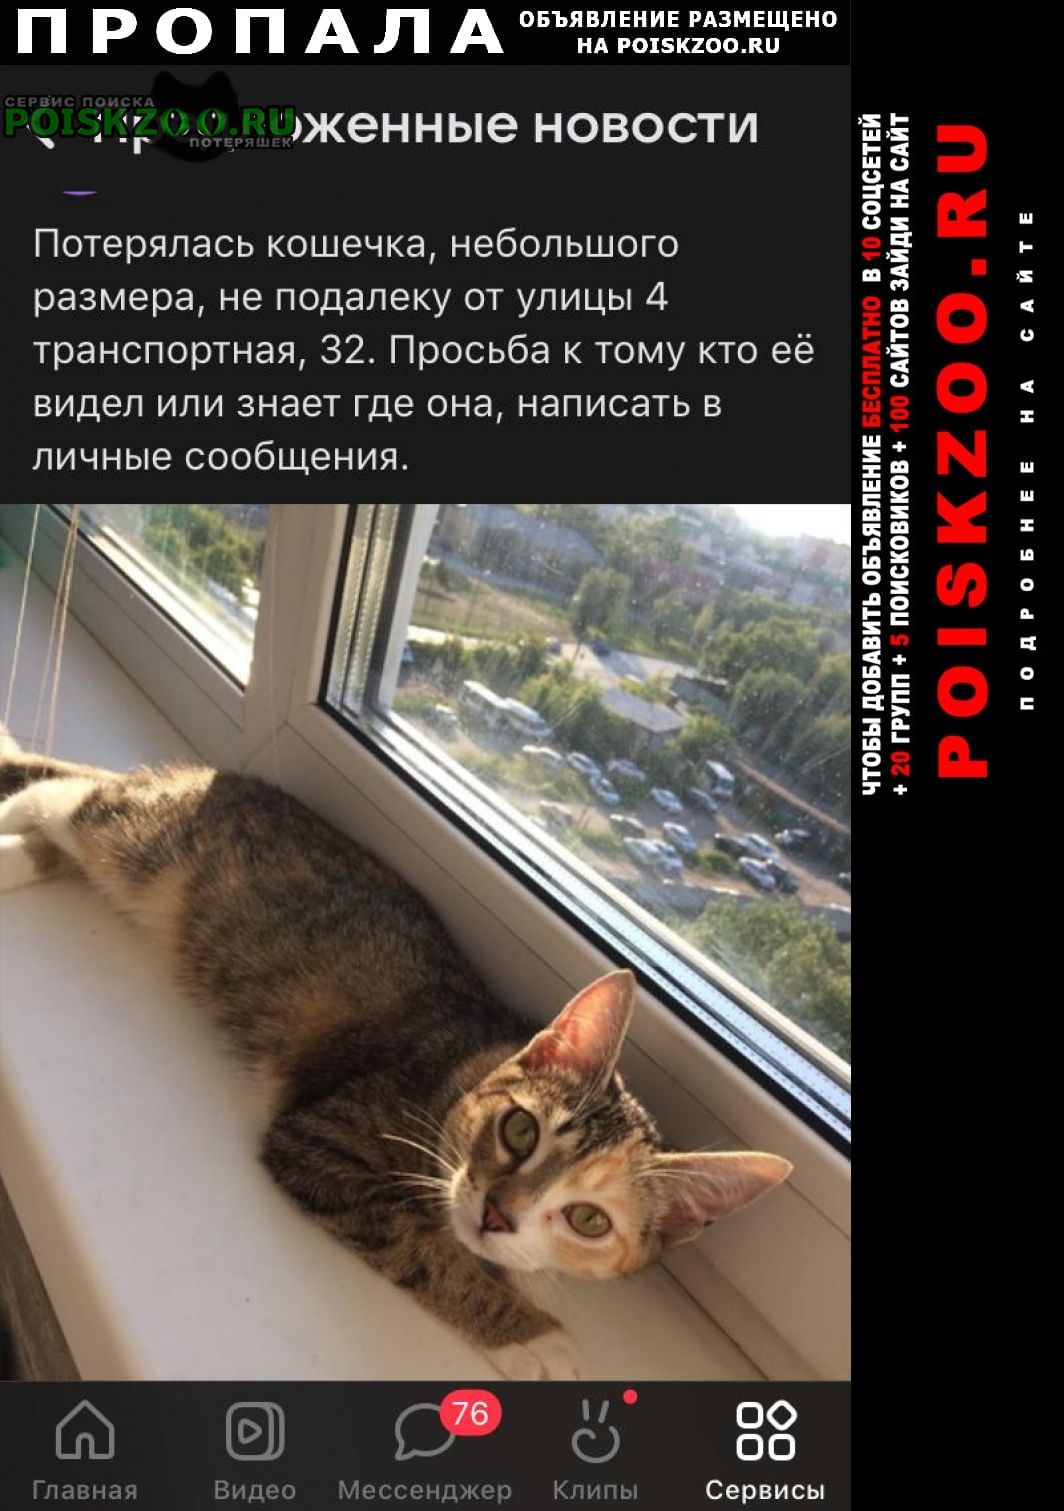 Пропала кошка помогите, за вознаграждение Омск